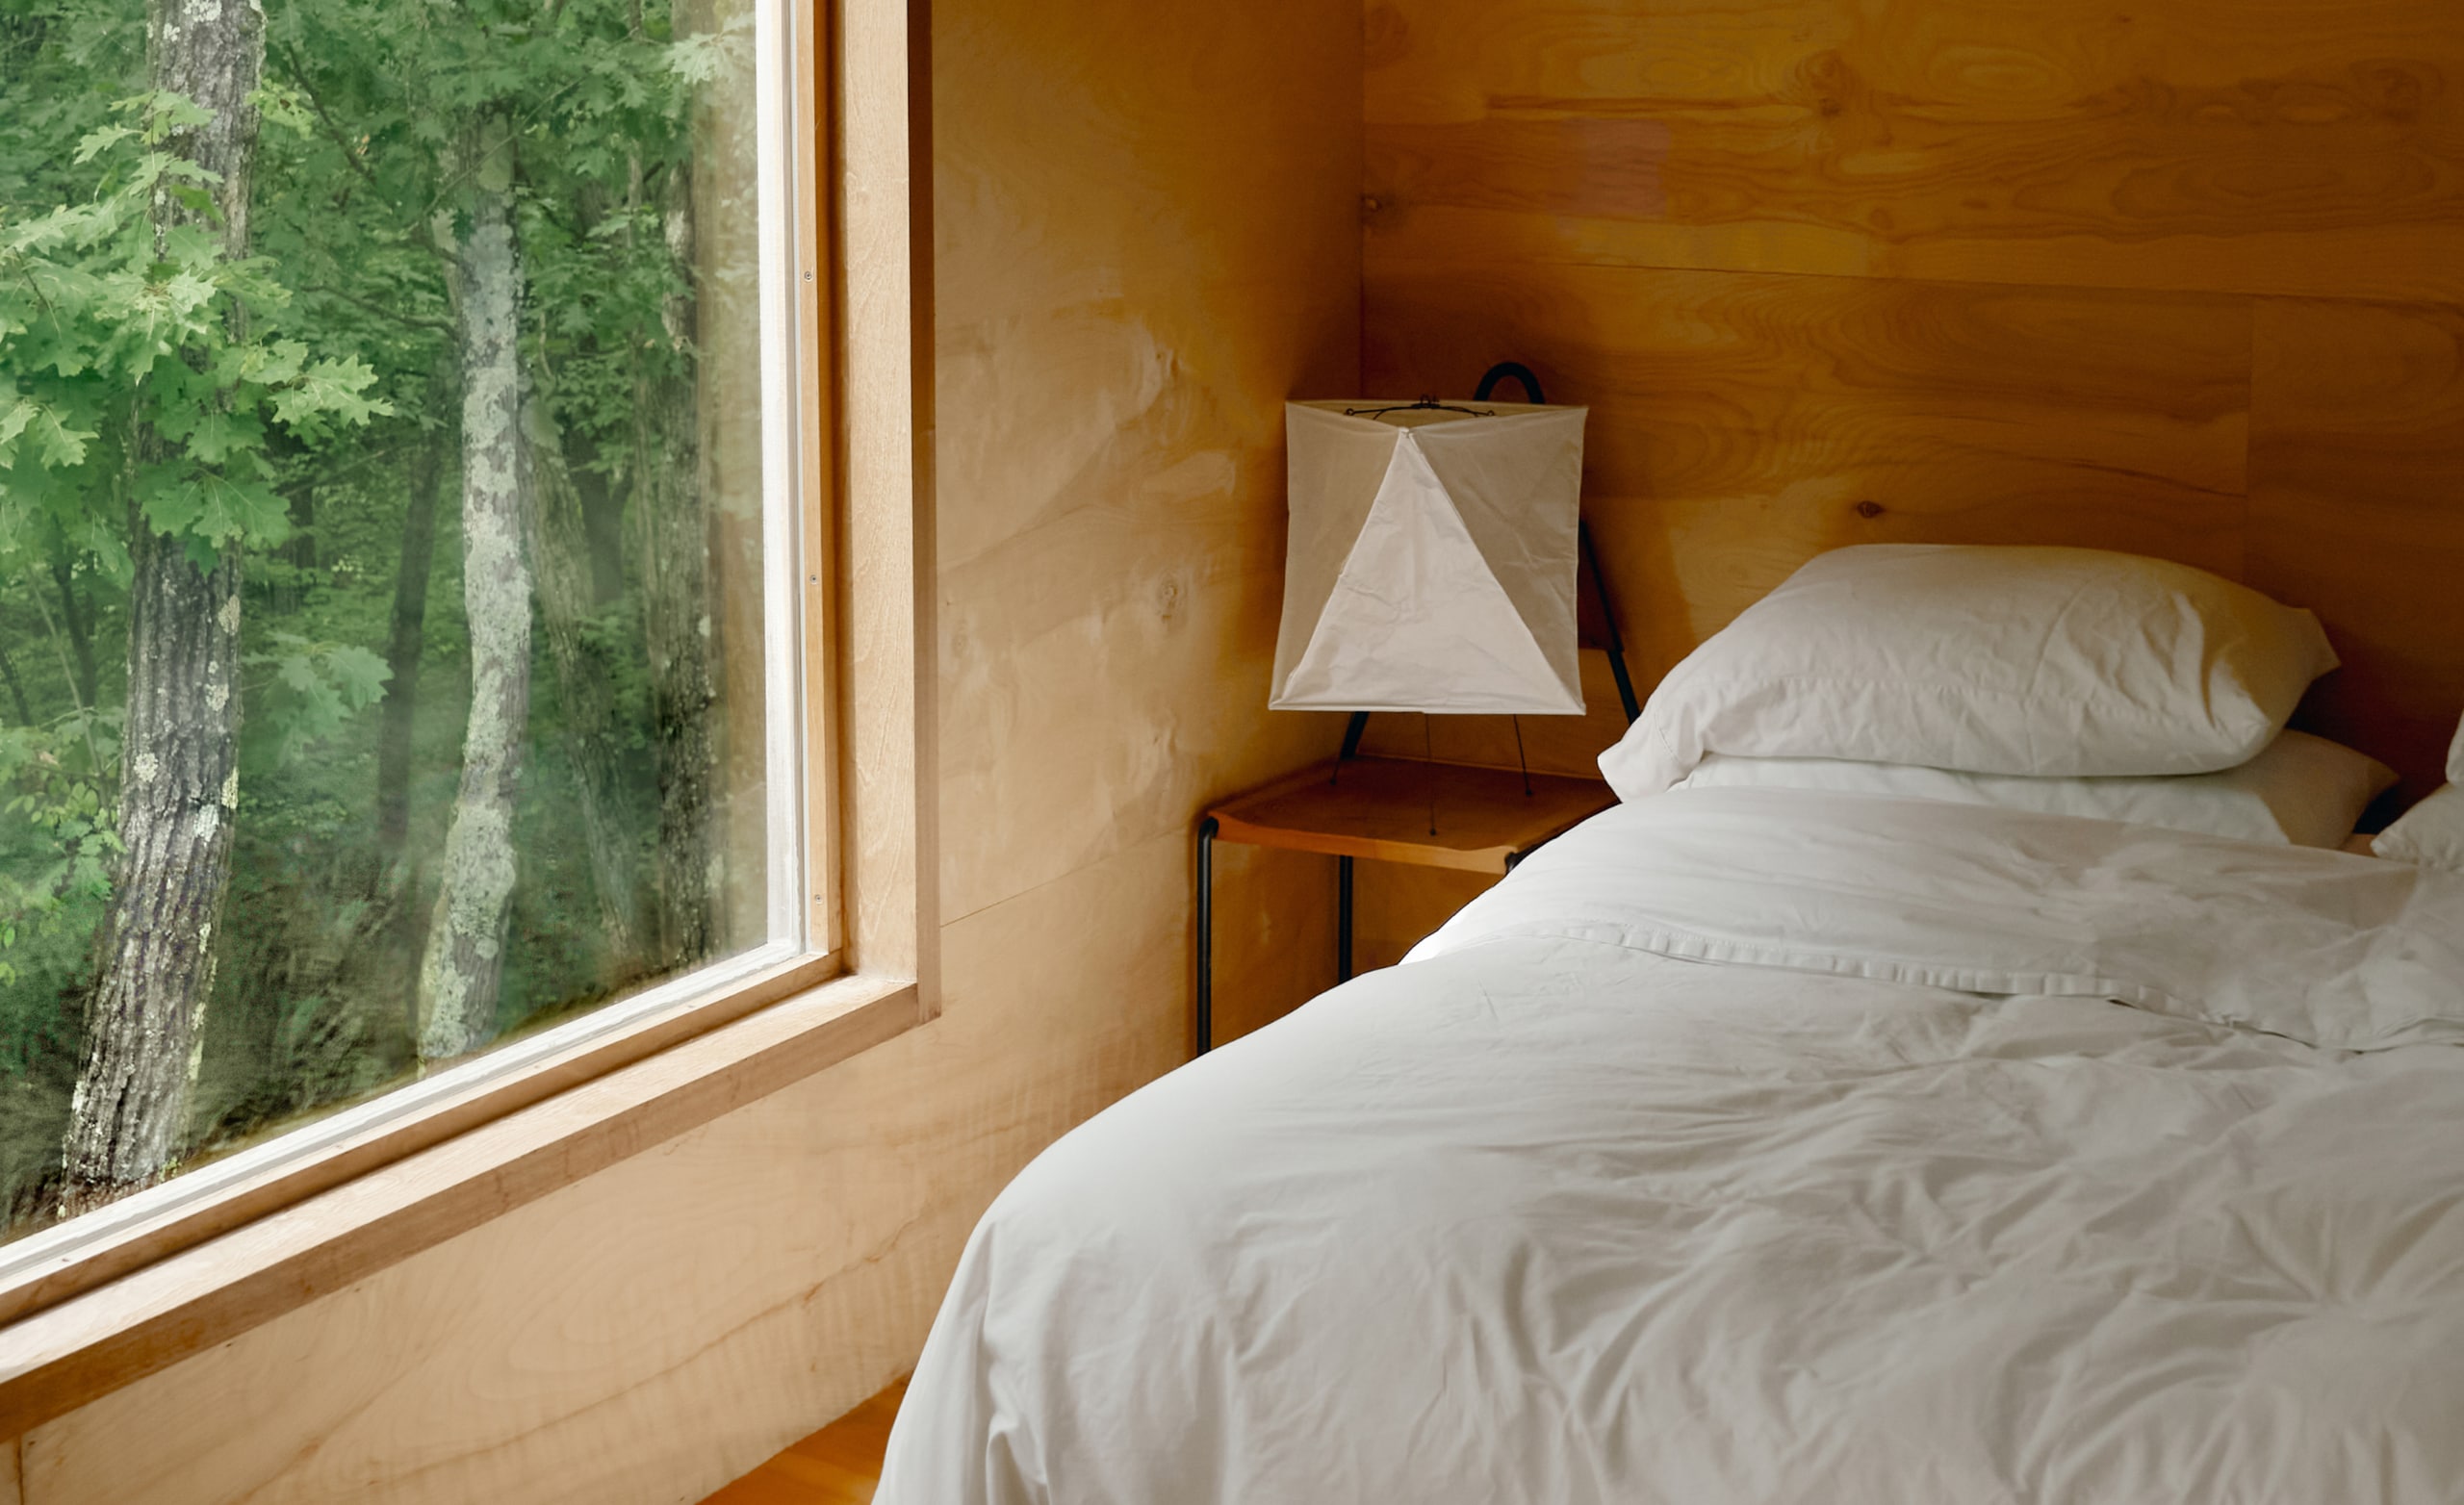 En un dormitorio hay una cama recién tendida con sábanas blancas y una gran ventana desde donde pueden verse árboles afuera.